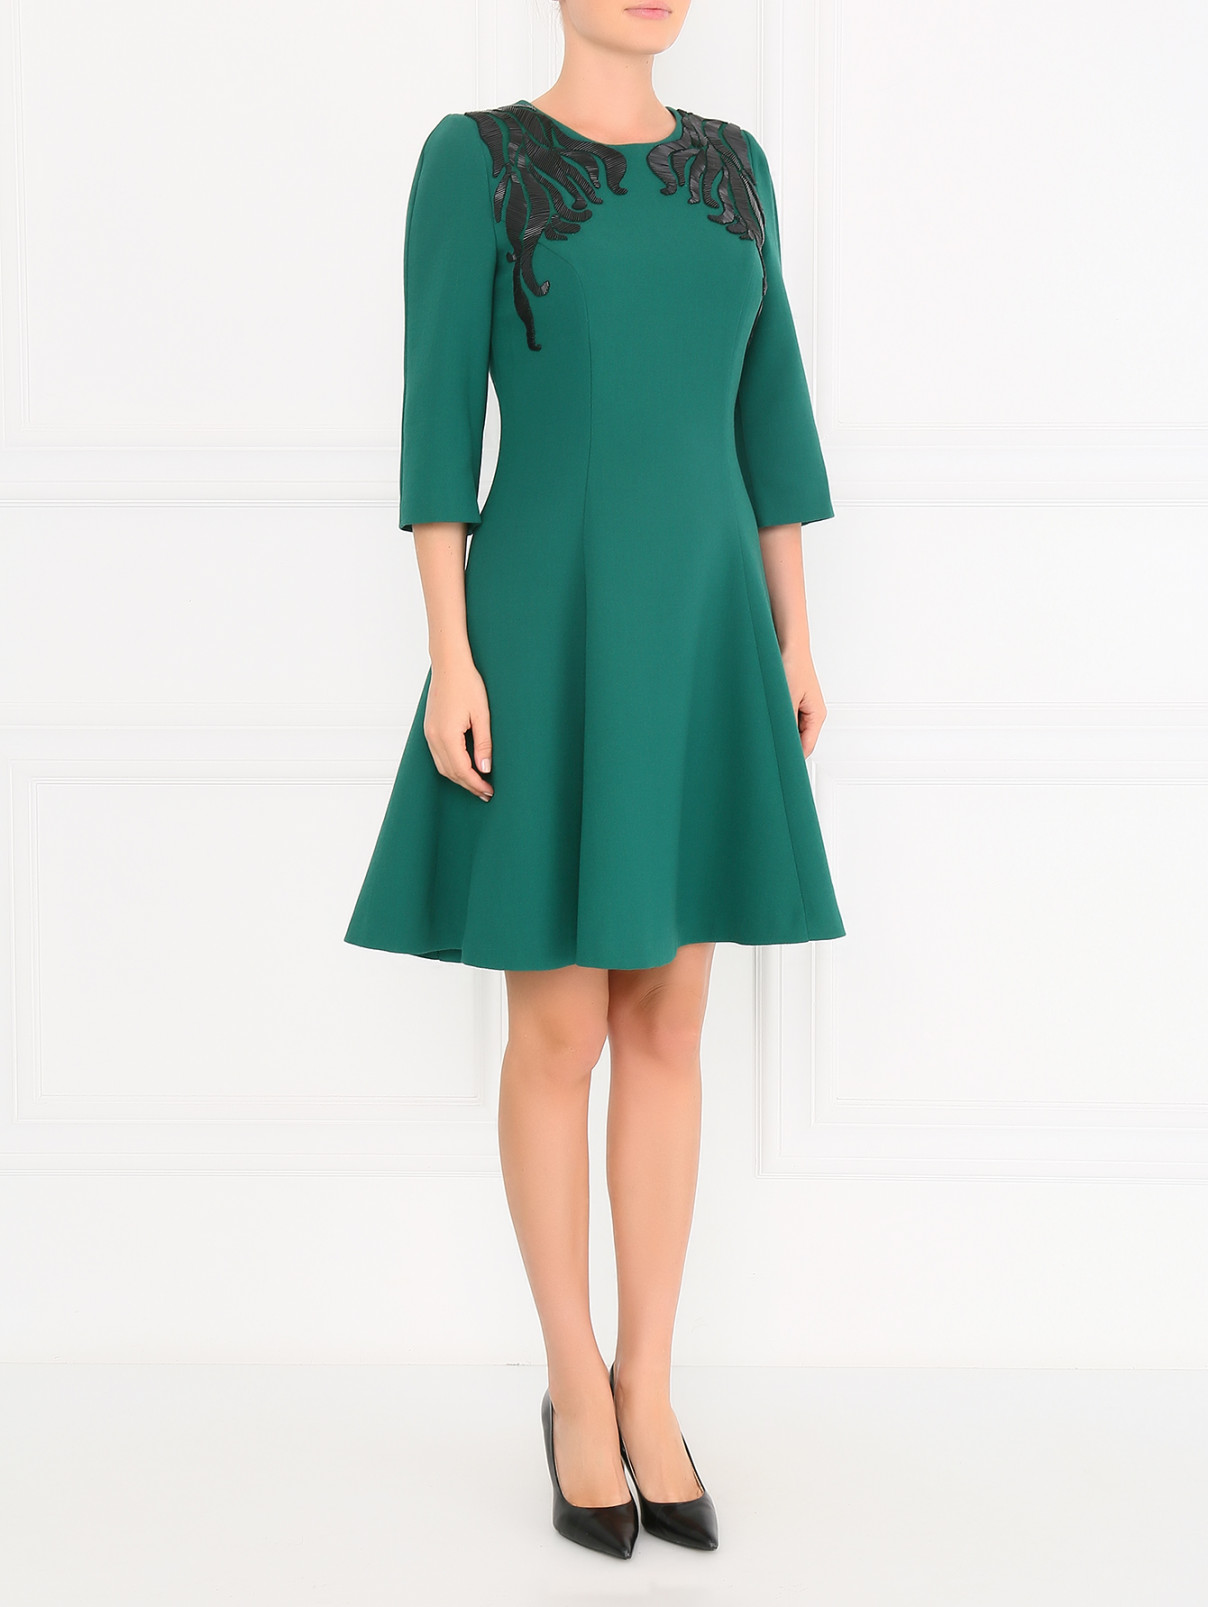 Платье-мини с аппликацией Andrew GN  –  Модель Общий вид  – Цвет:  Зеленый